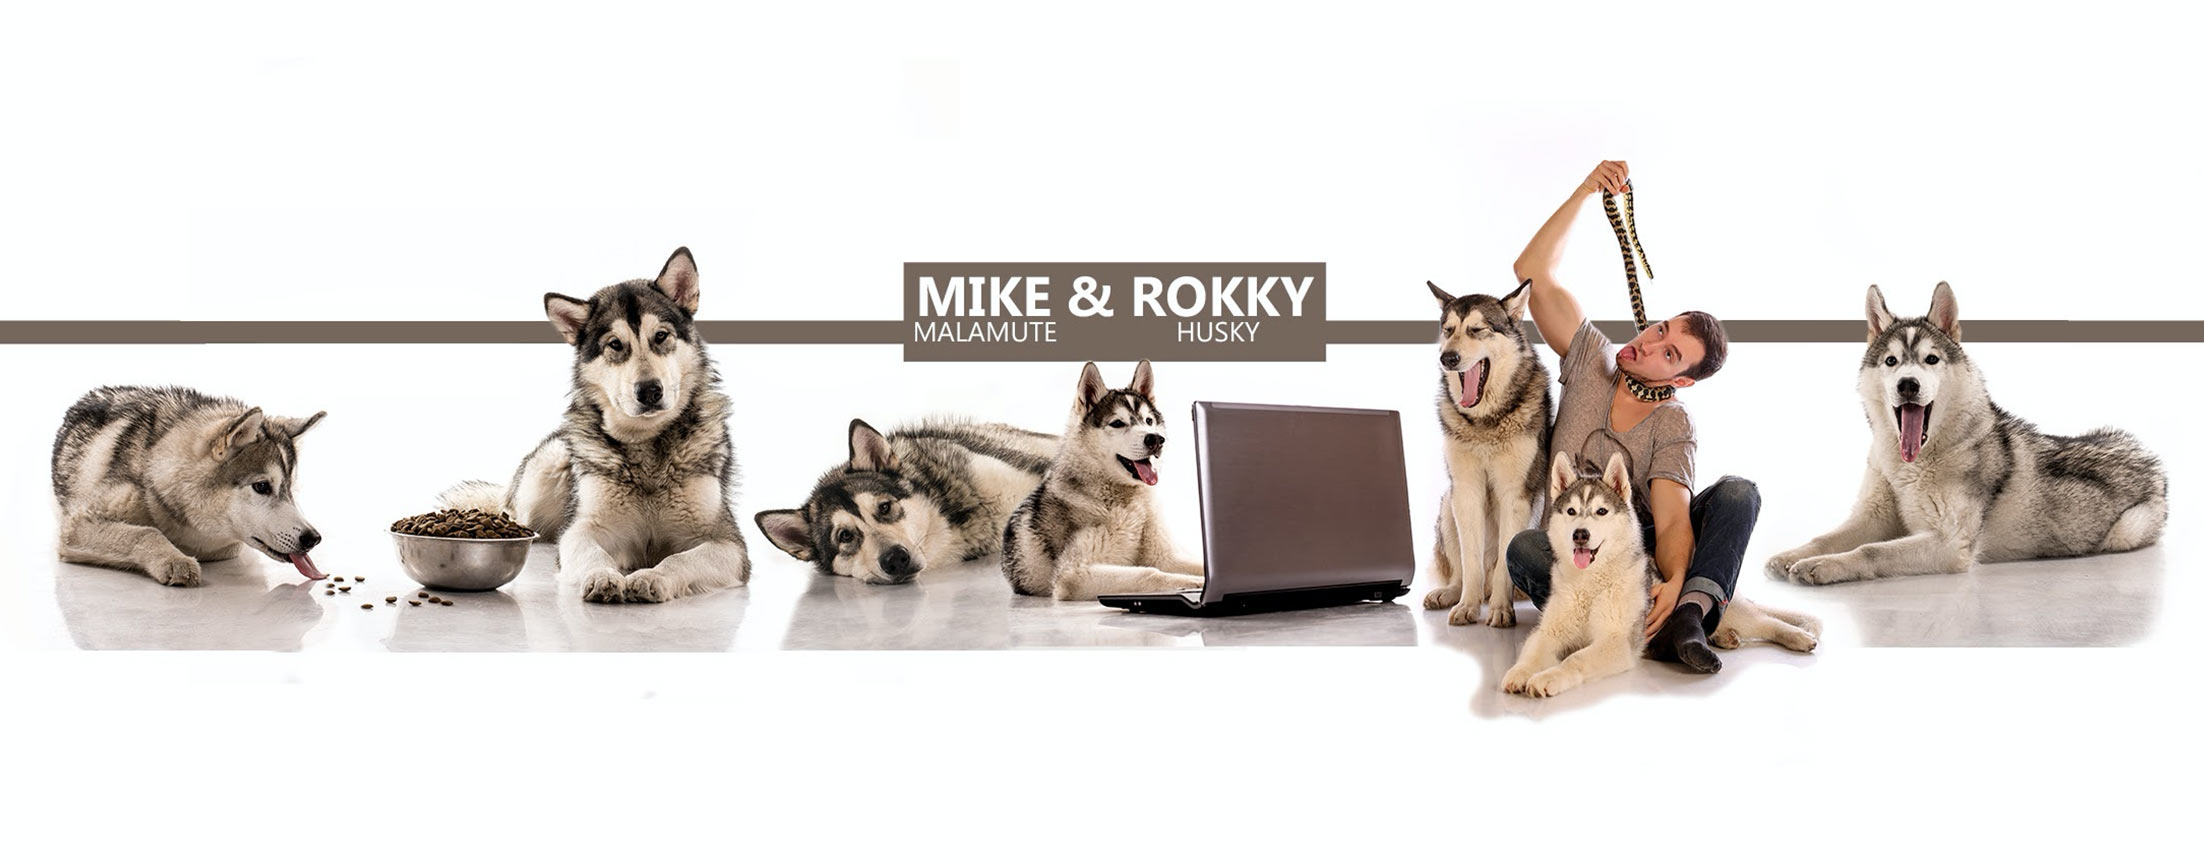 Собаки: Хаски и Маламут Рокки